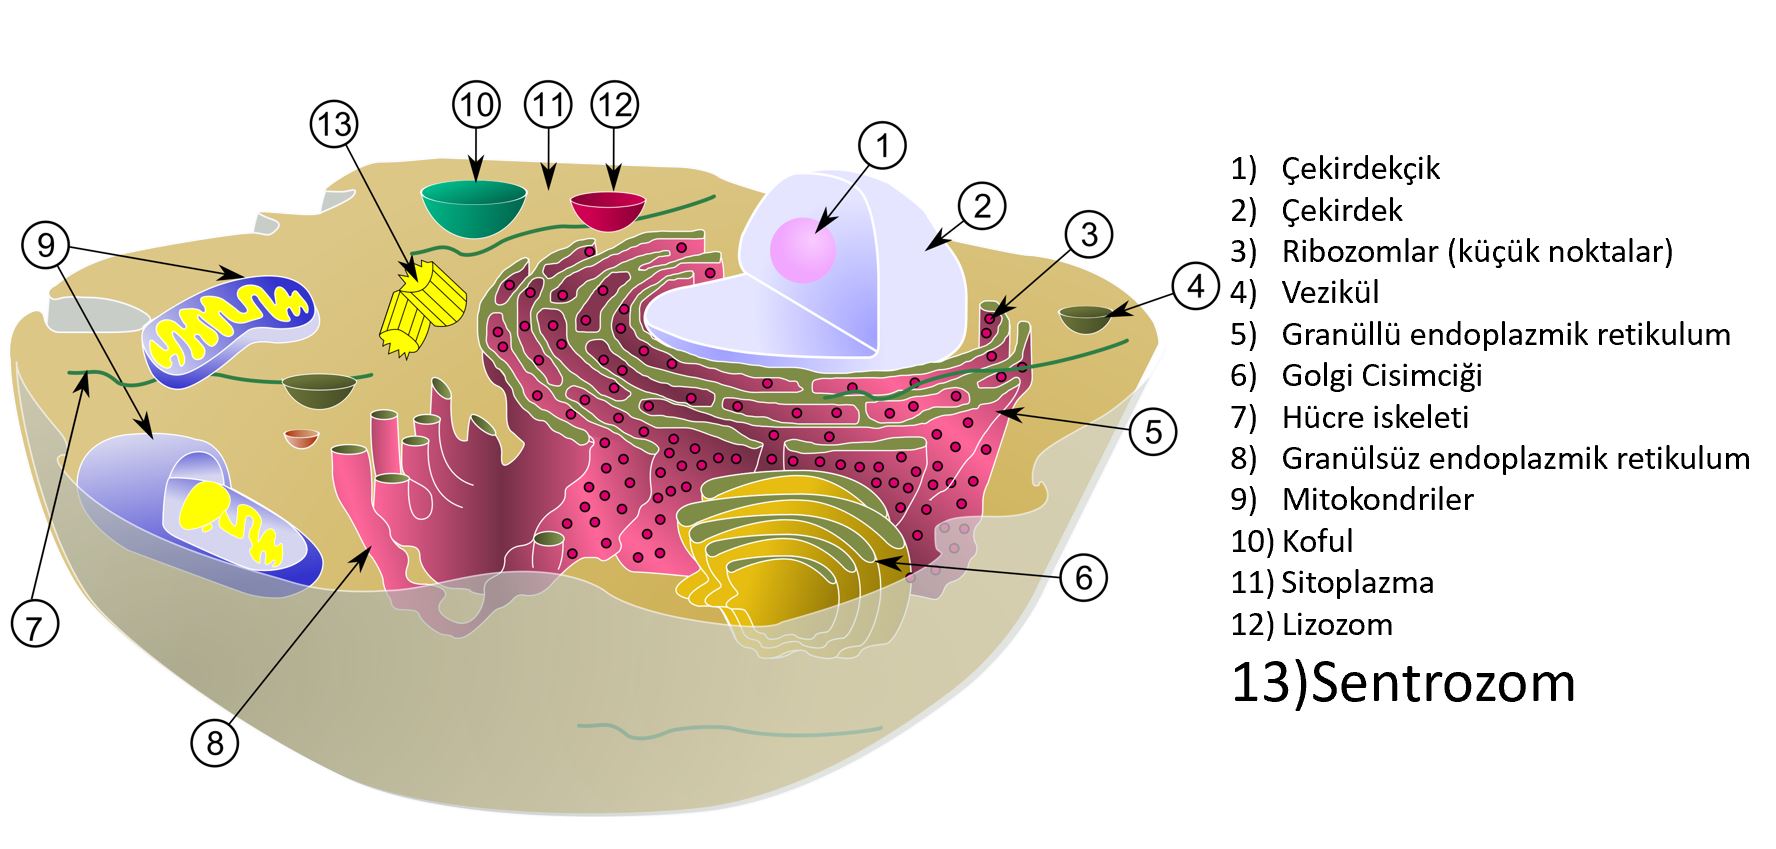 insan hucresi genel bakis organeller